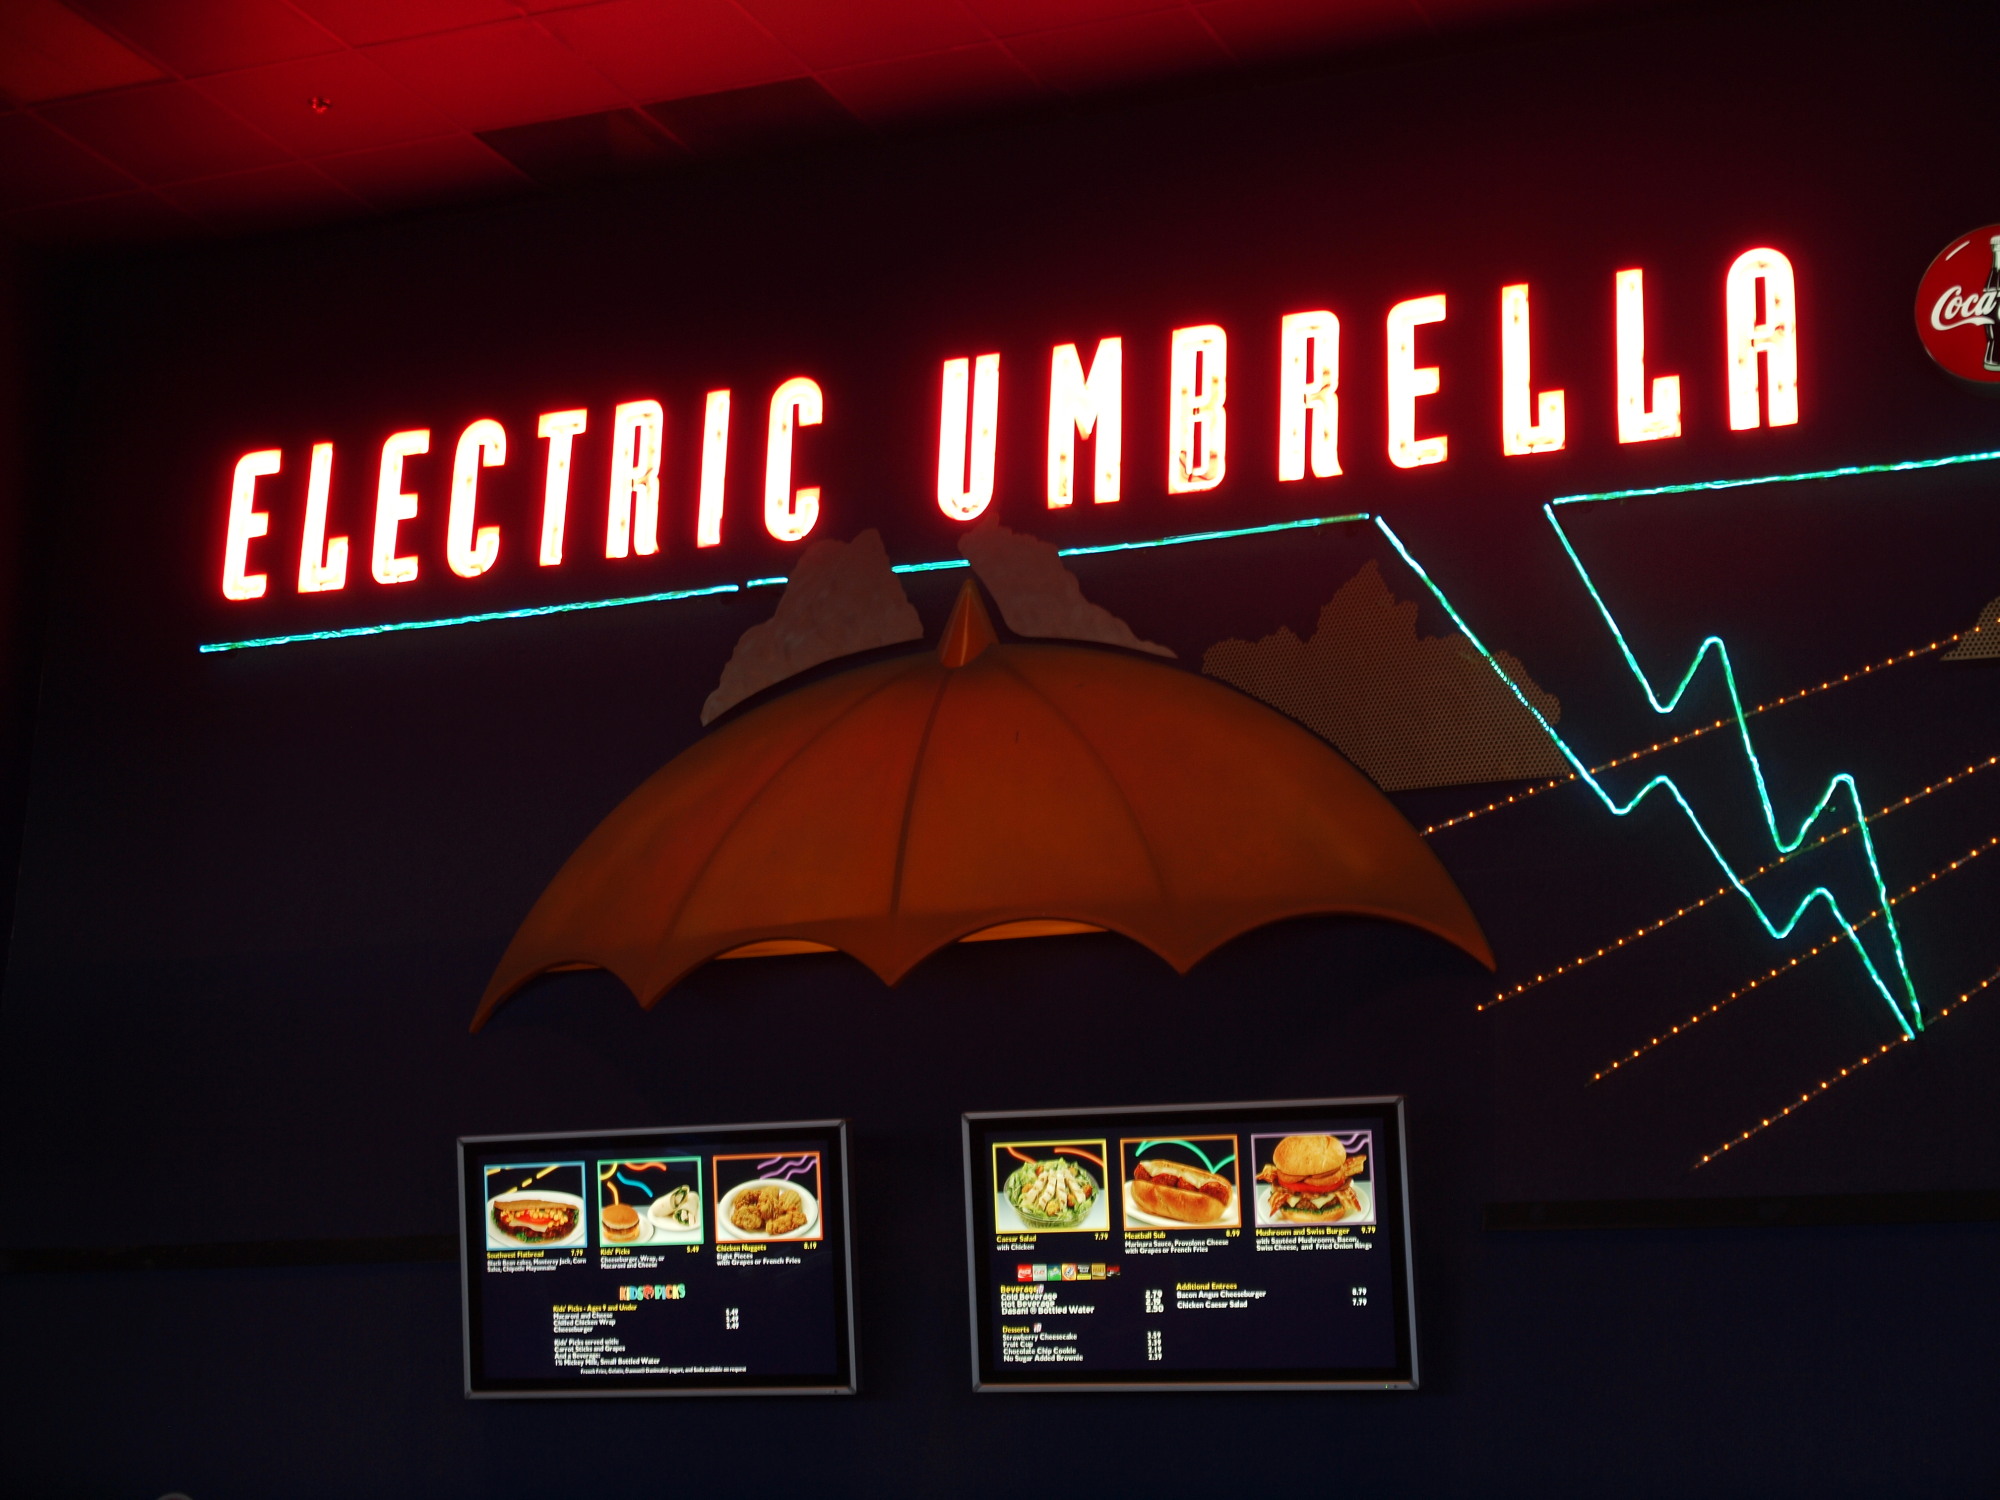 Epcot - Future World - Electric Umbrella